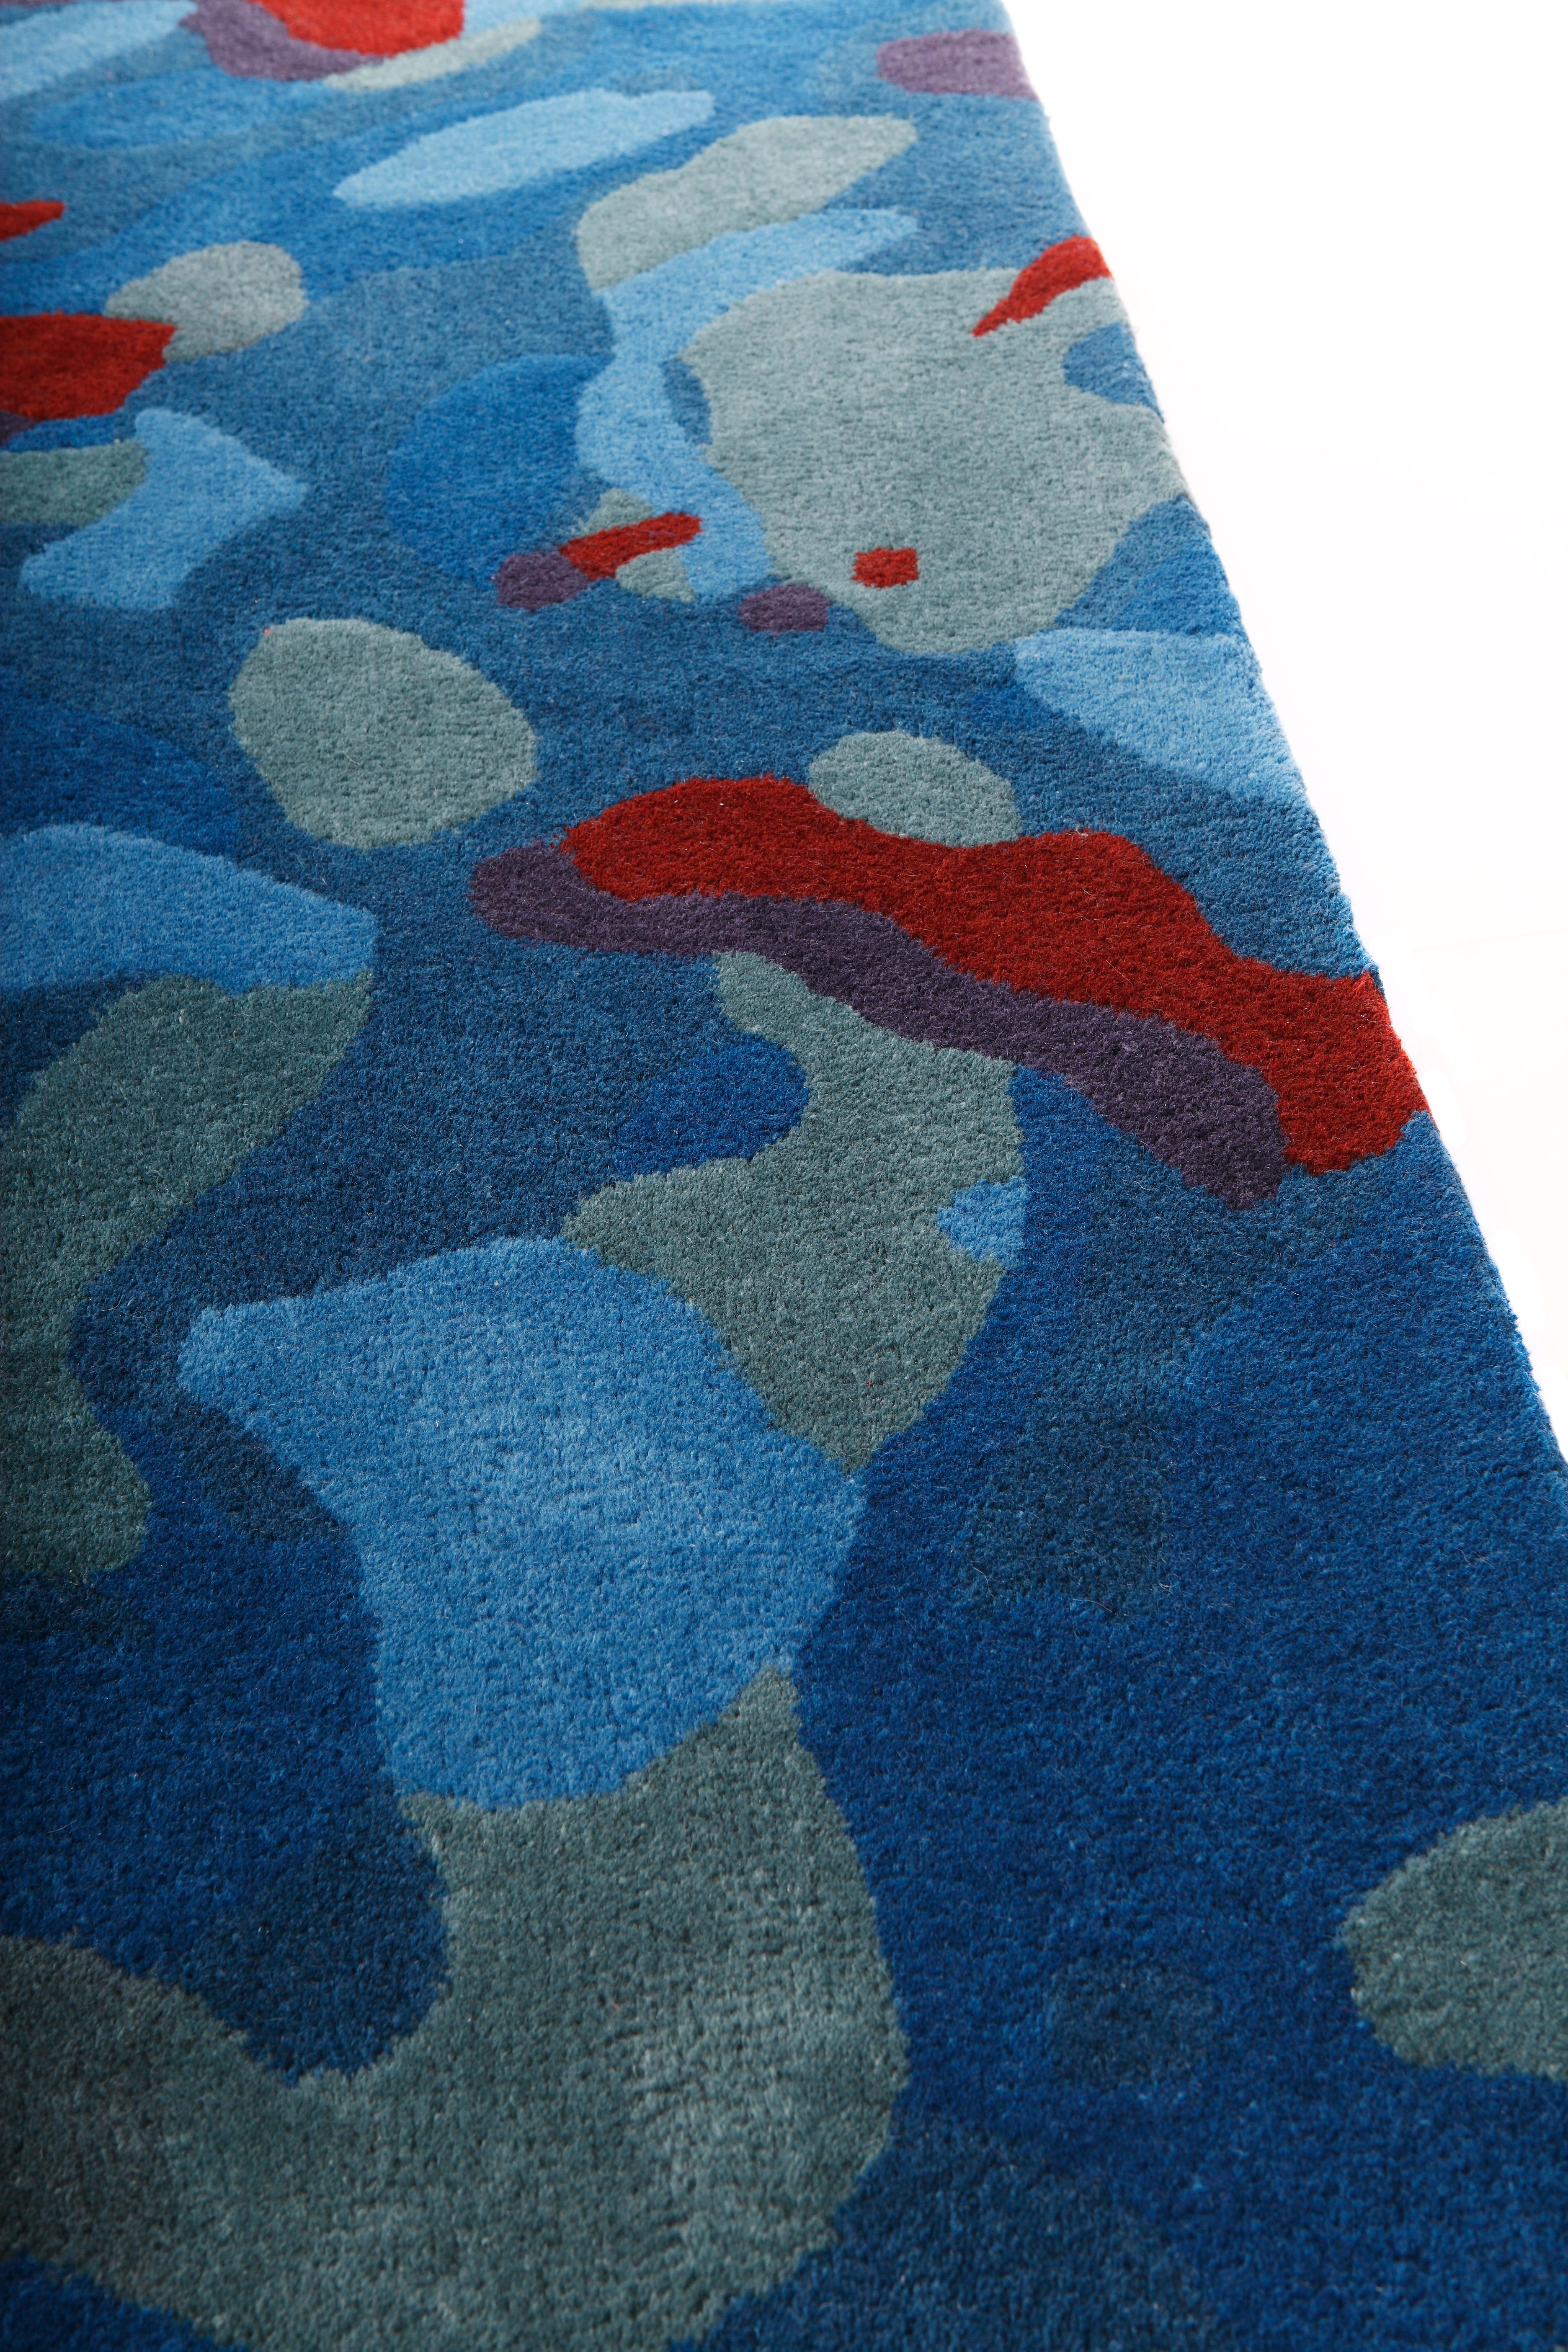 Der Teppich camouflage macro blue aus der Kollektion Nodus 2012 von Alberto Artesani ist ein handgetufteter Teppich aus Wolle und Viskose mit einer Florhöhe von 10 mm.
Standardgröße: 200 x 300 cm, hergestellt in Indien.
 